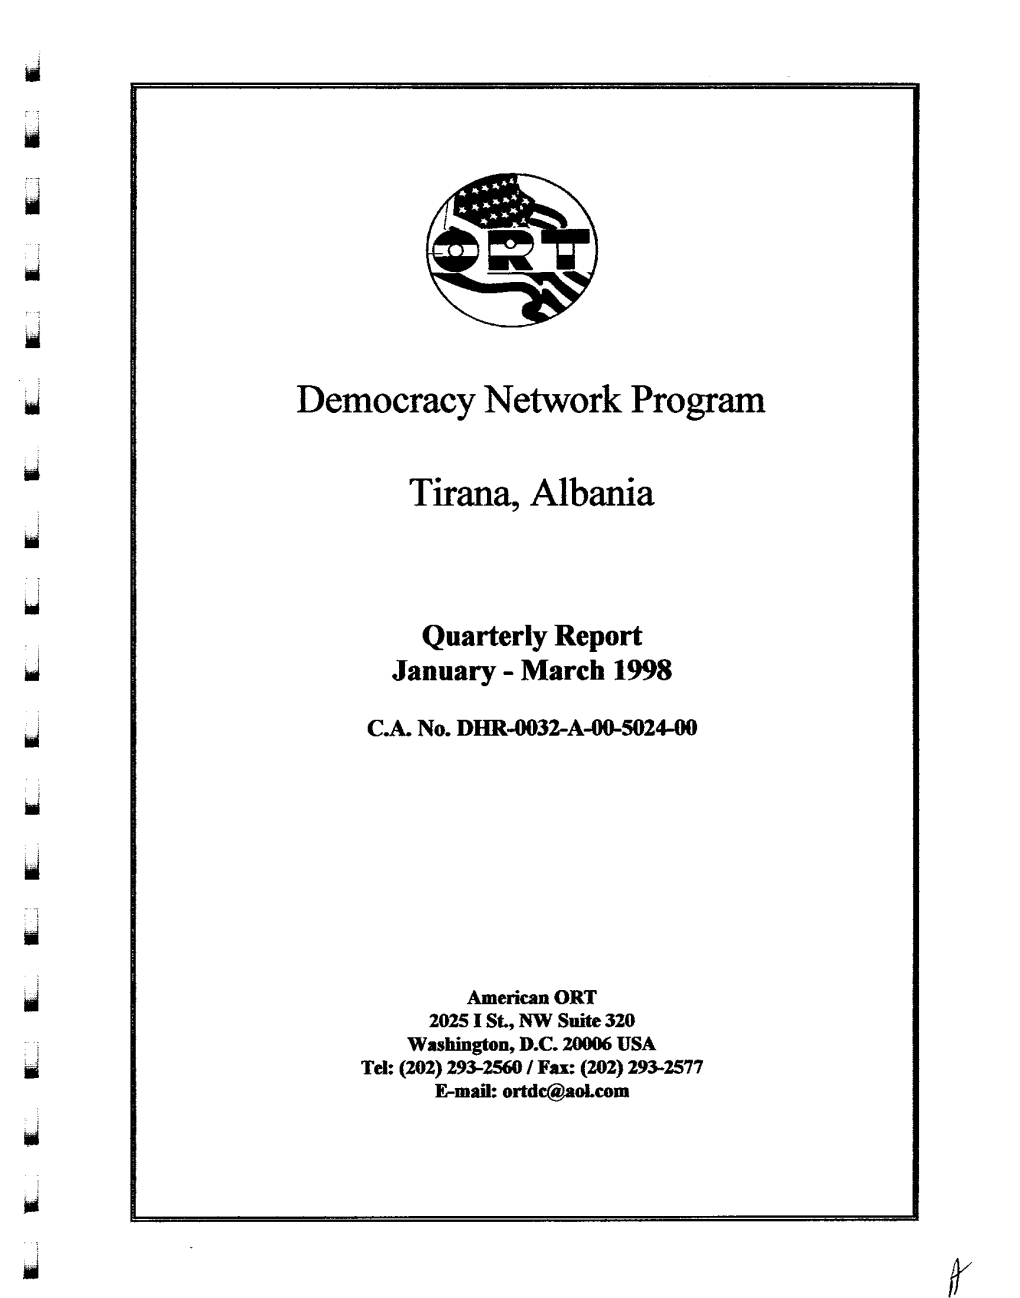 Democracy Network Program Tirana, Albania